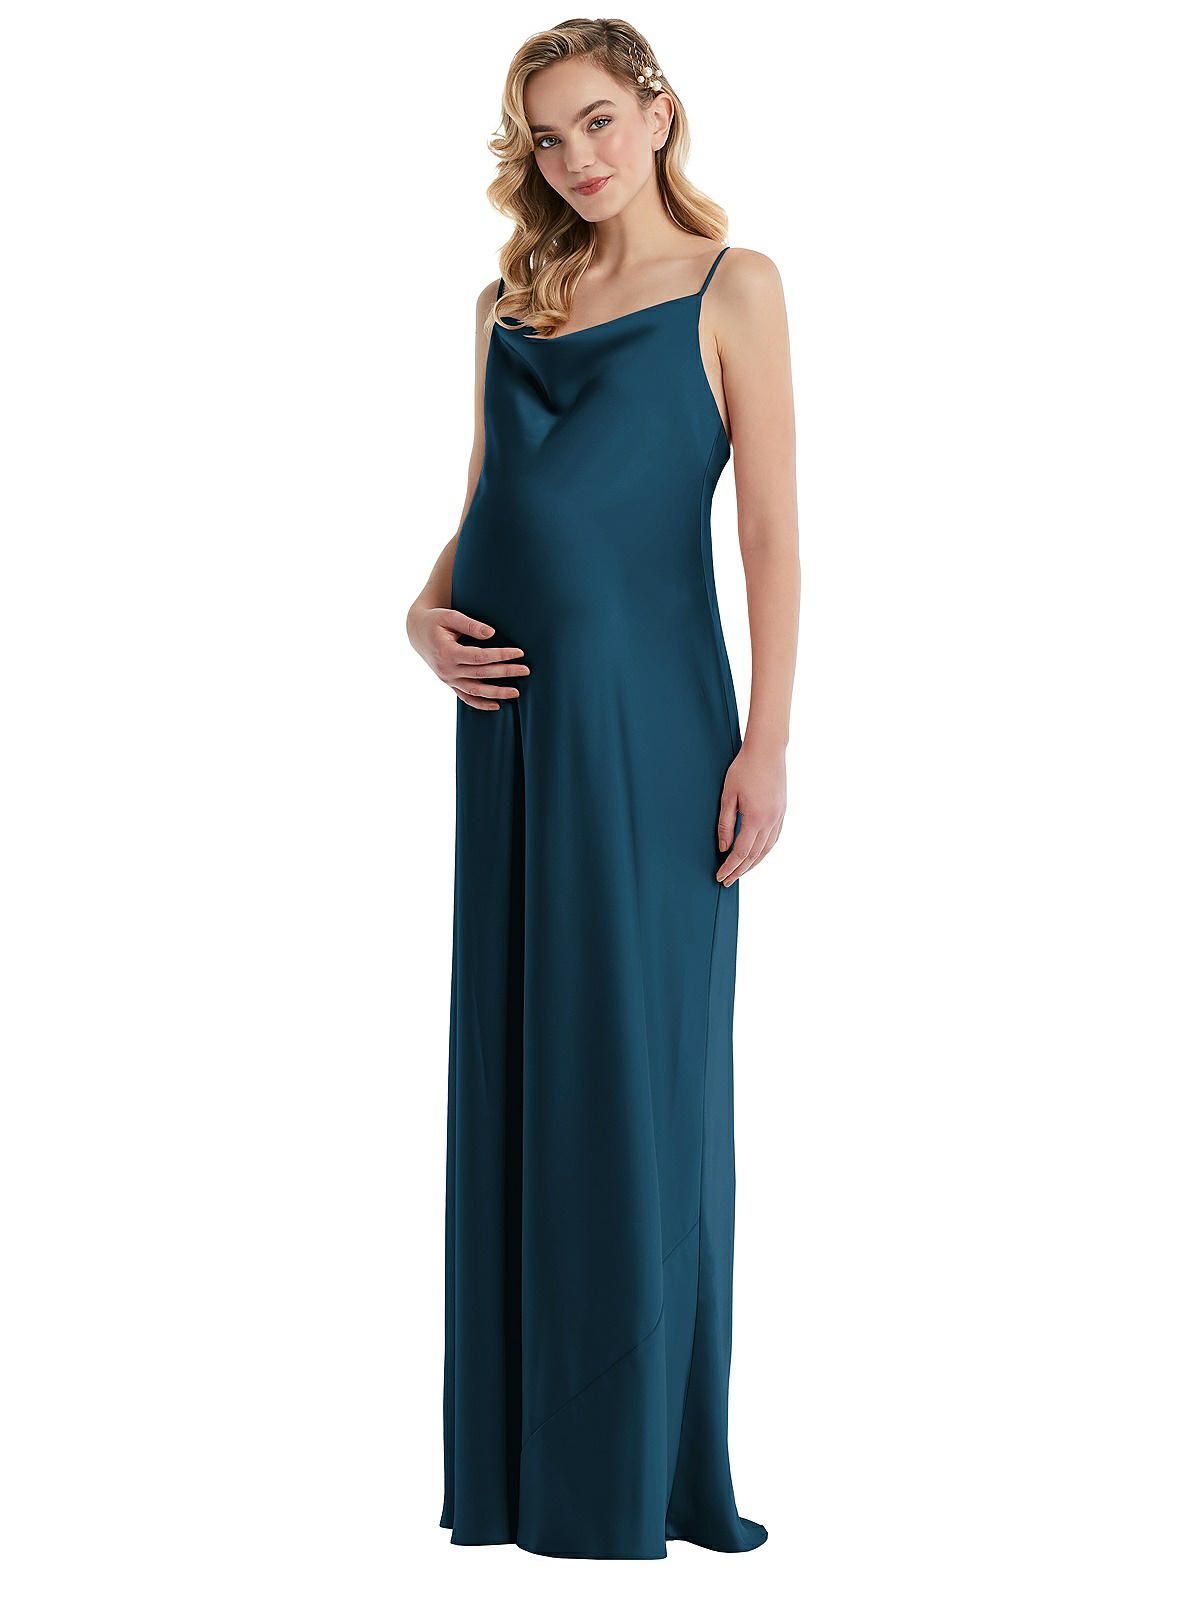 Cowl-Neck Tie-Strap Maternity Slip Dress in Atlantic Blue | The Dessy Group